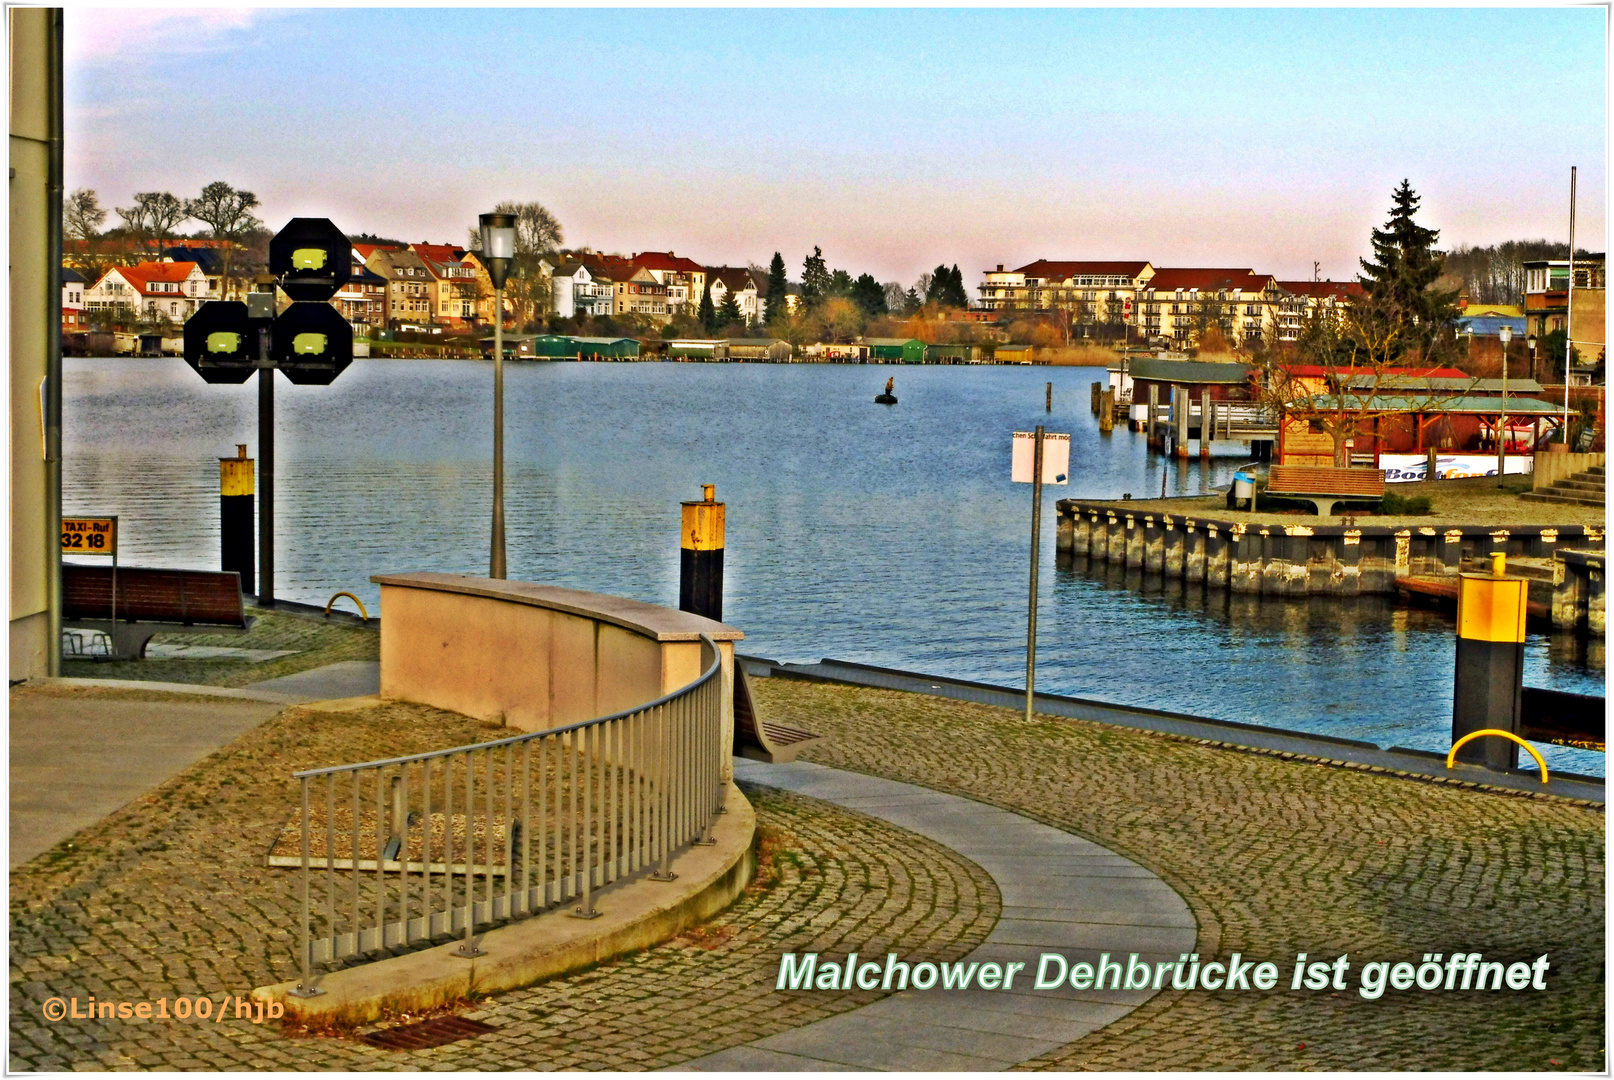 Malchower Drehbrücke ist geöffnet